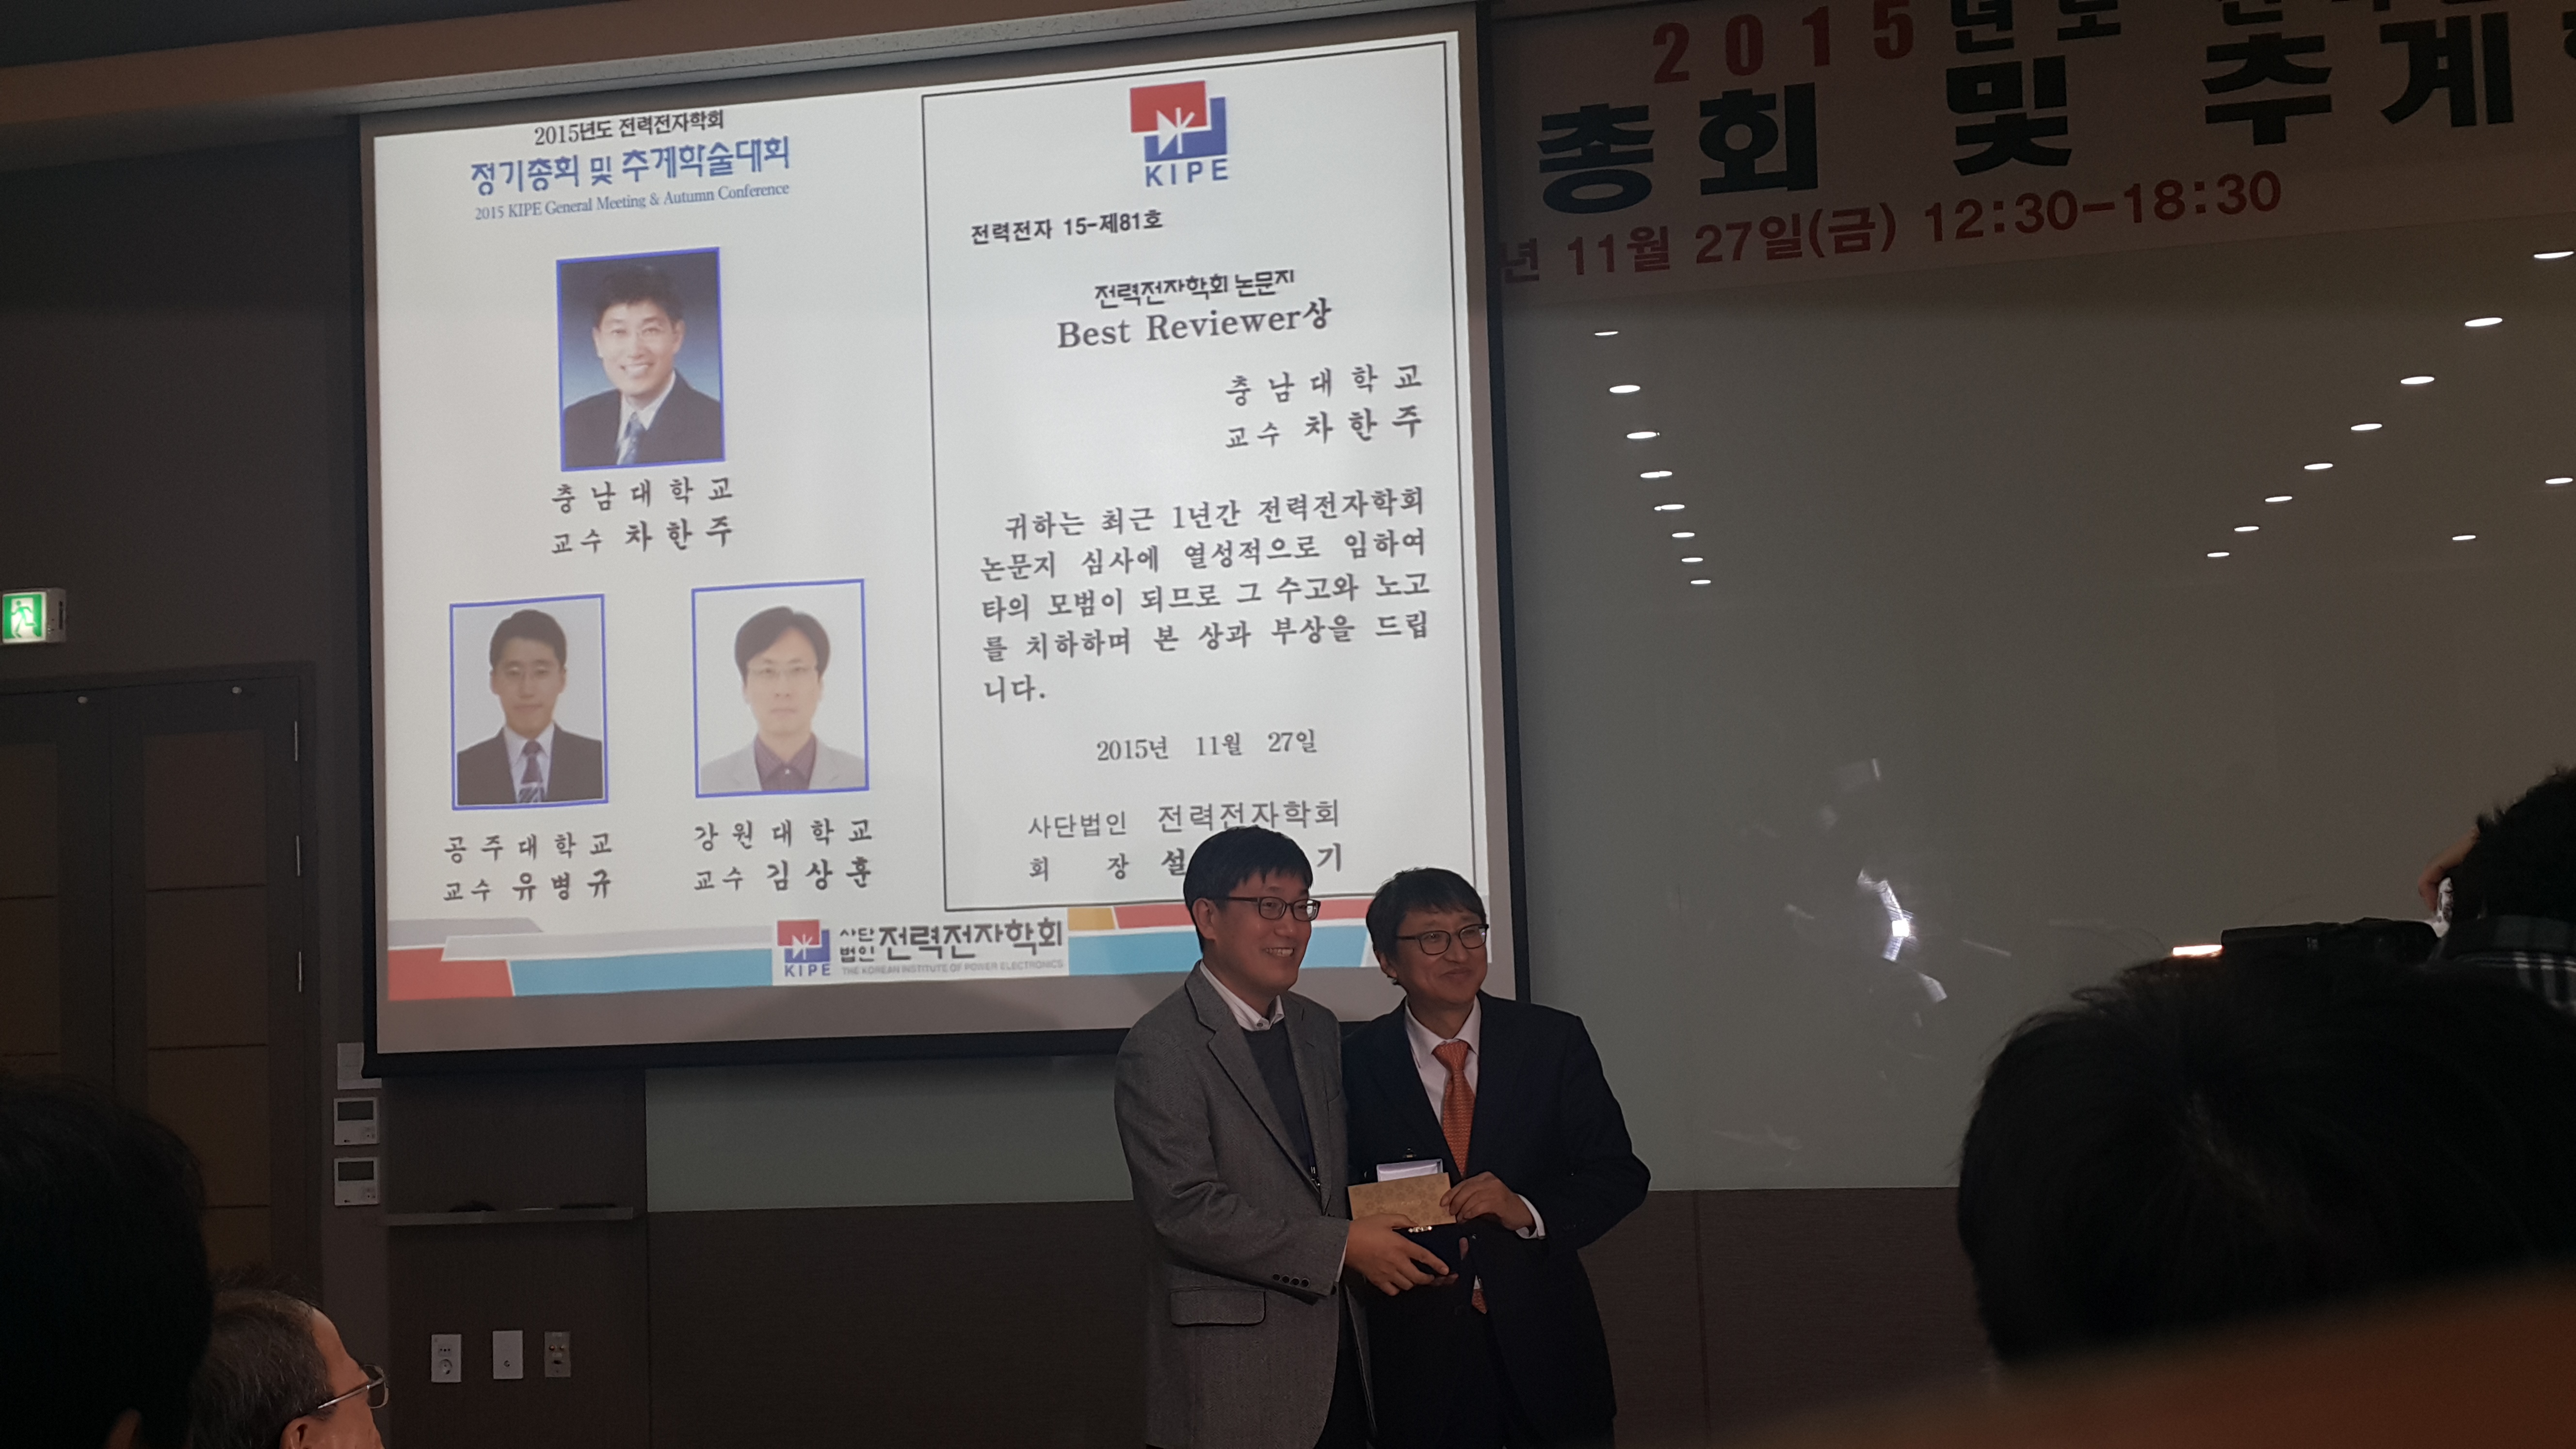 차한주 교수, 2015 전력전자 추계학술대회에서 Best Reviewer상 수상